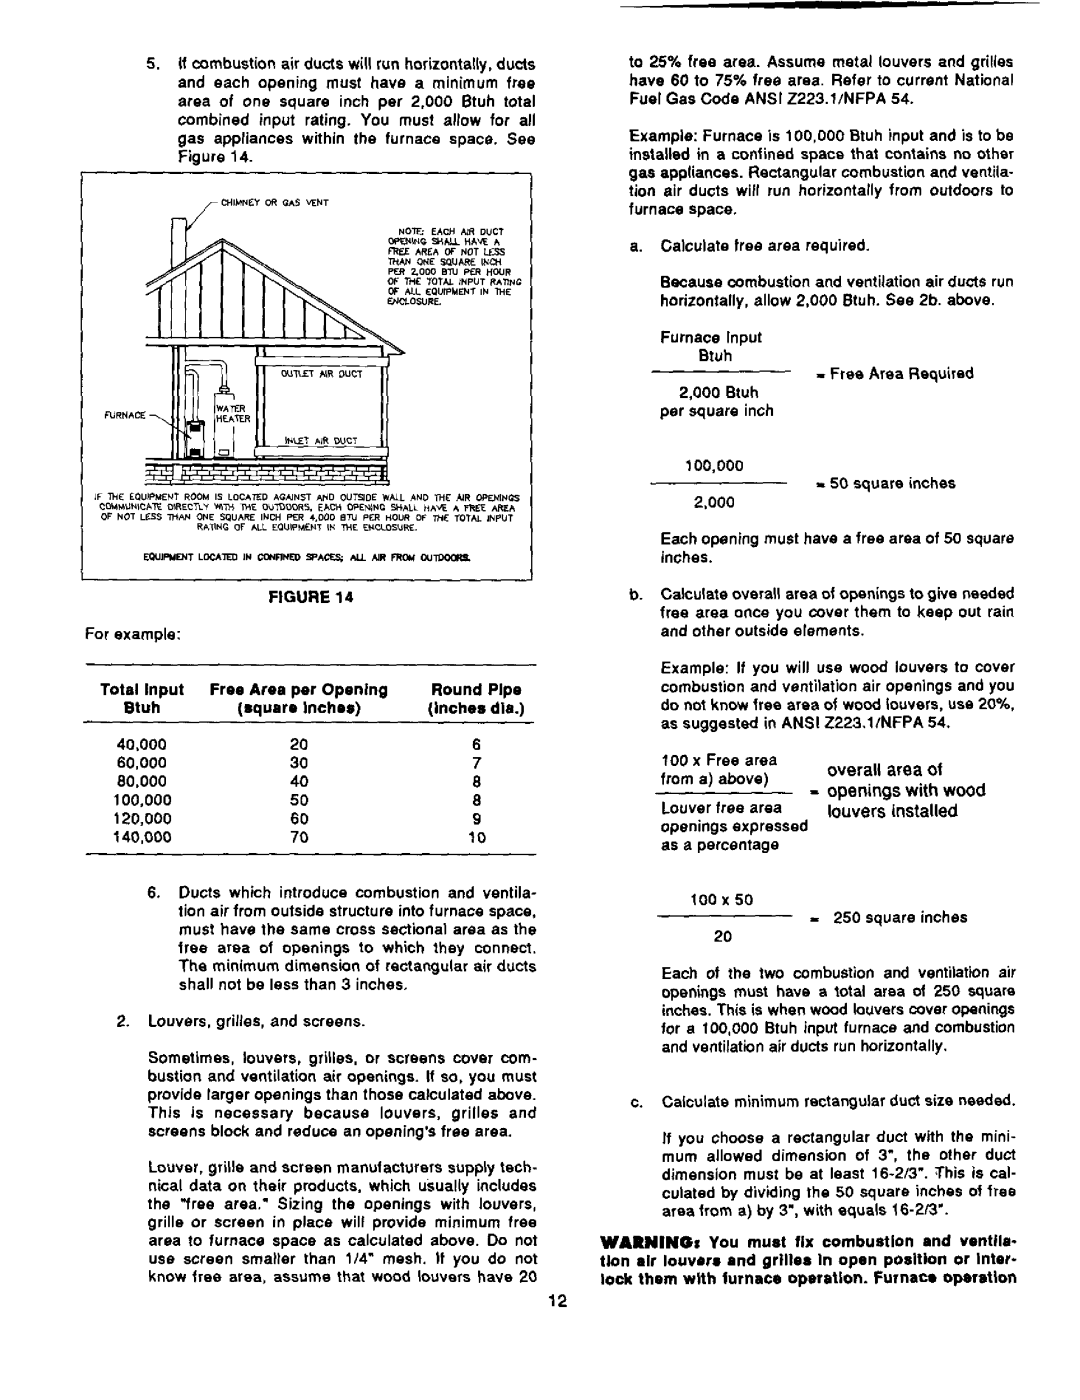 Bard 403293A manual 